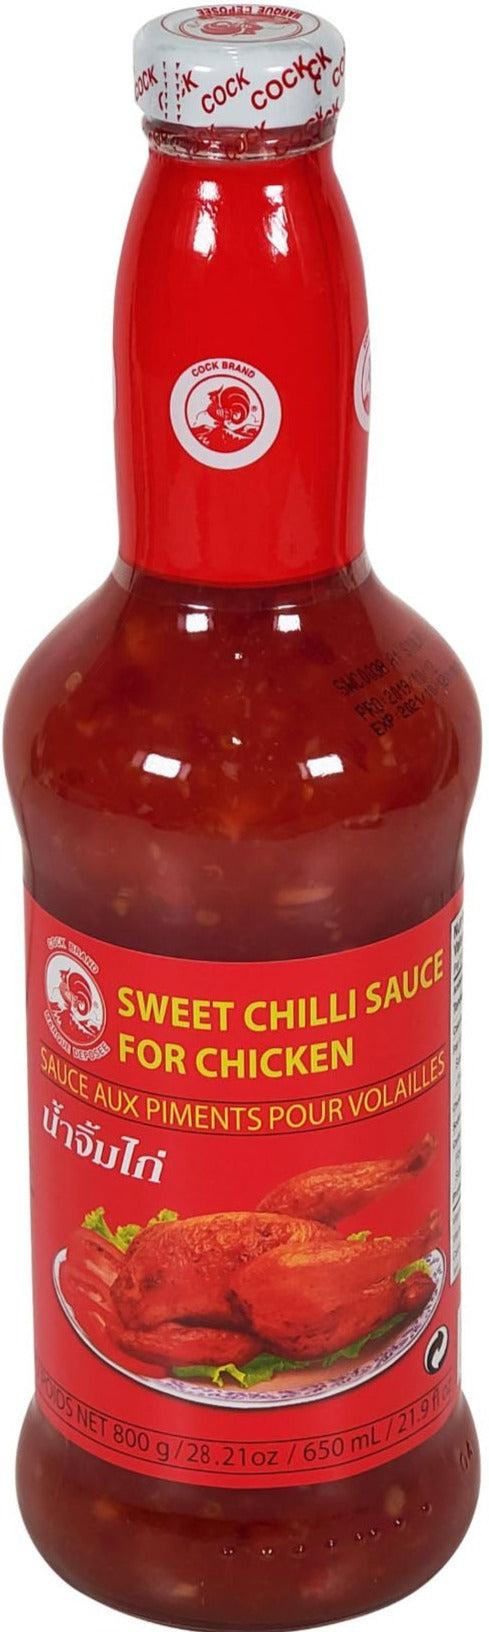 Cock Brand - Sweet Chilli Sauce - Chicken - 800g